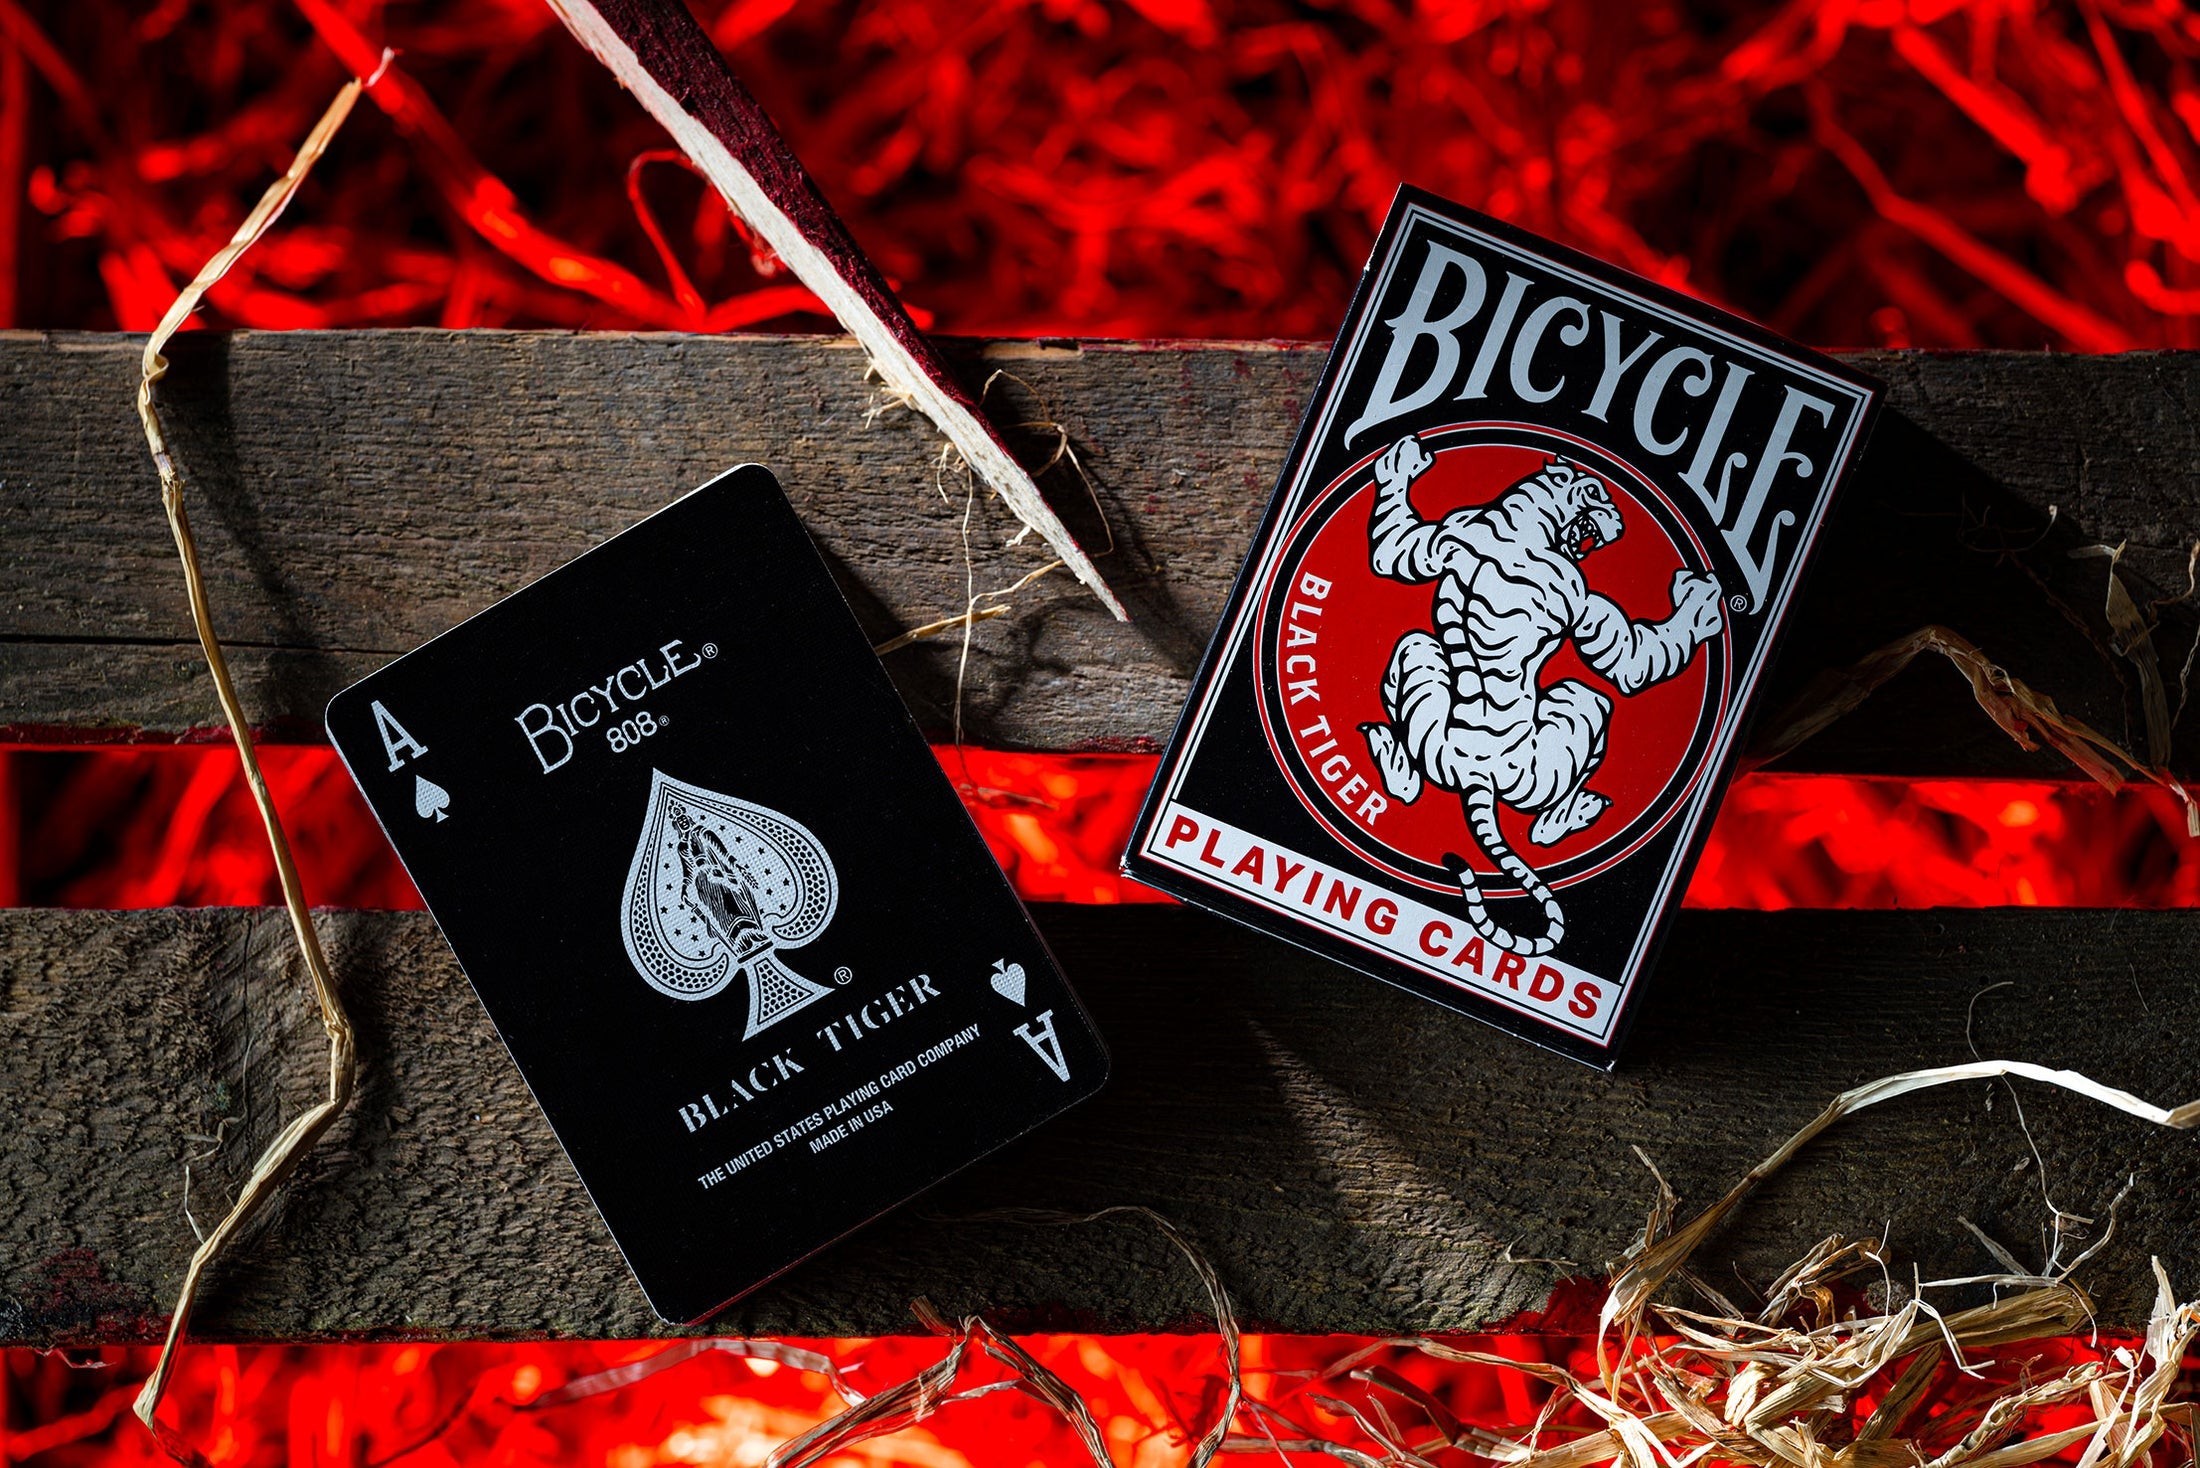 Bicycle Black Tiger Deck: Revival Edition